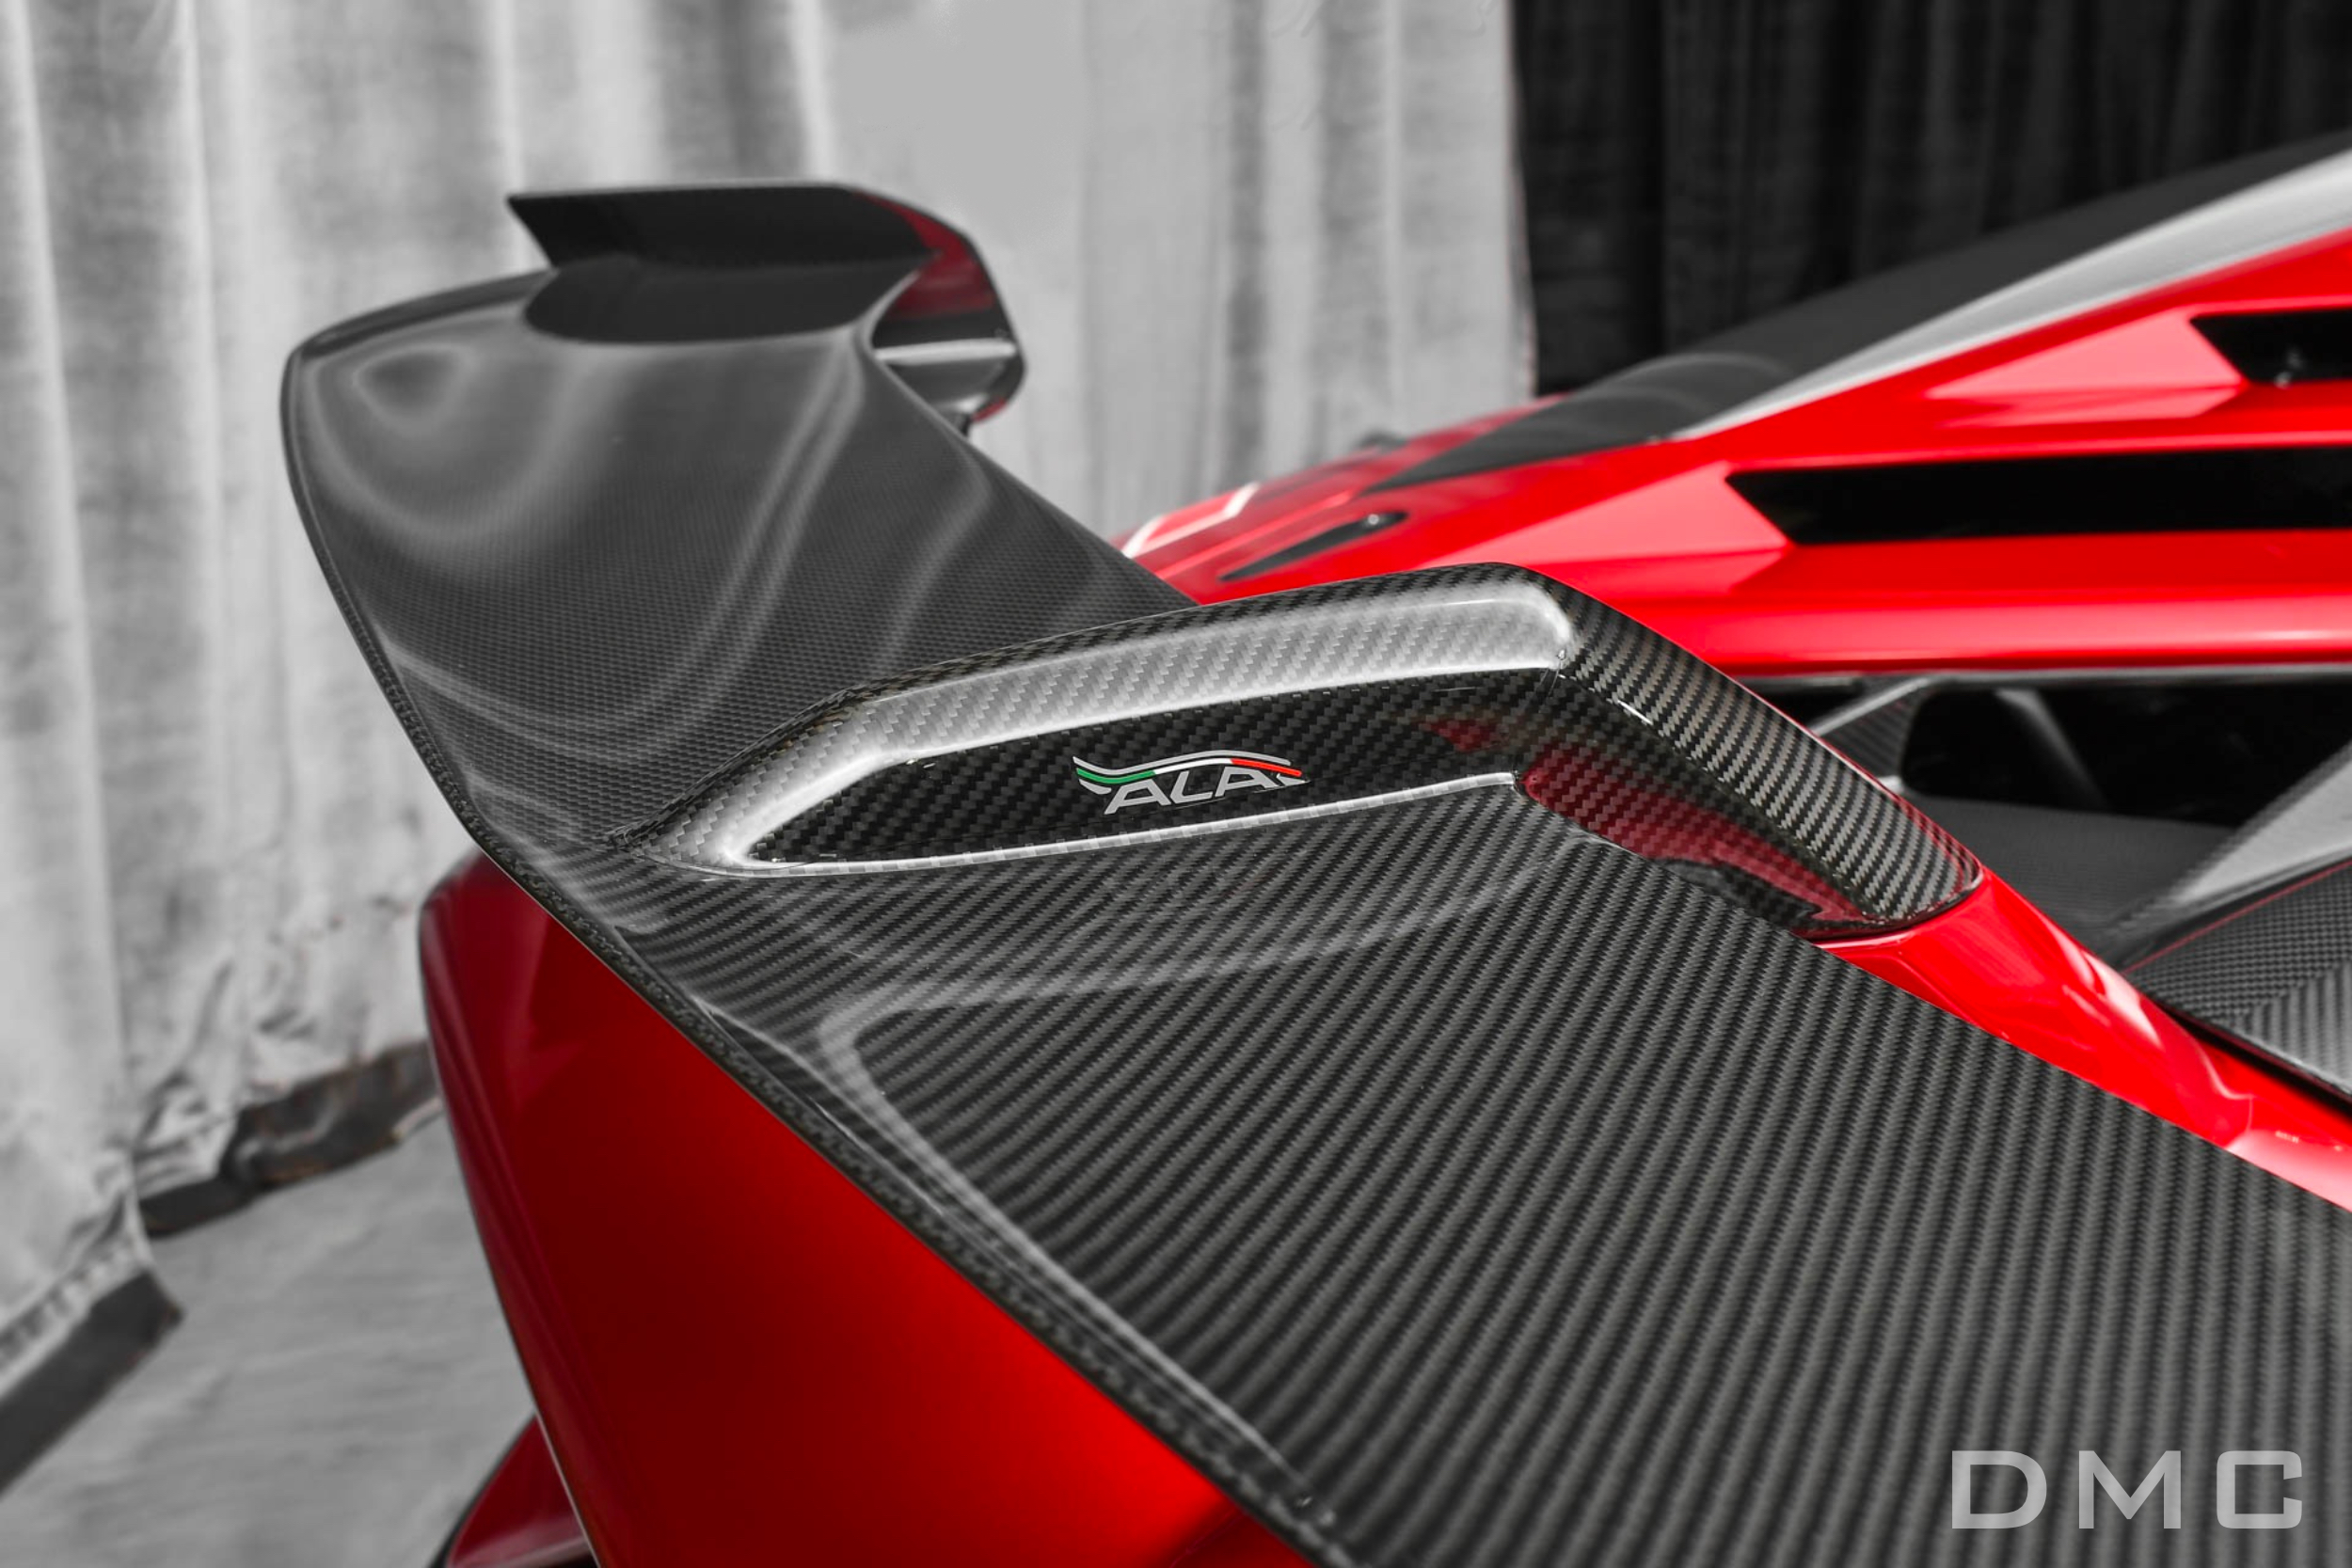 Lamborghini Aventador SVJ Carbon Fiber Rear Bumper : Fits OEM Body